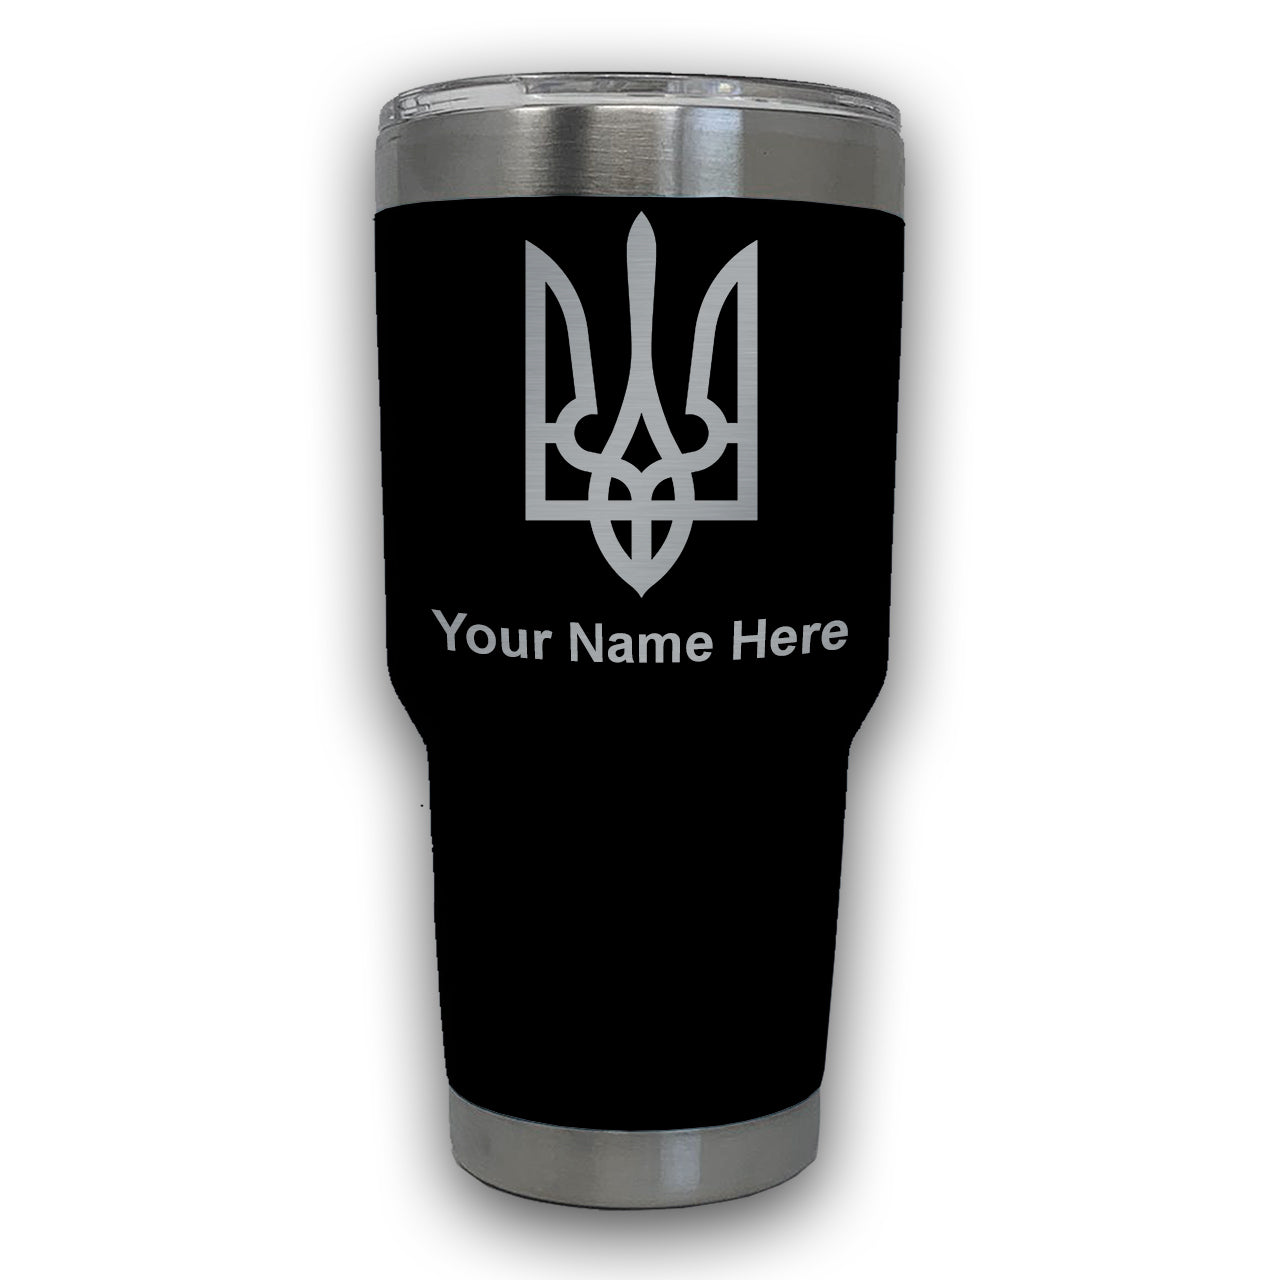 LaserGram 30oz Tumbler Mug, Flag of Ukraine, Personalized Engraving Included